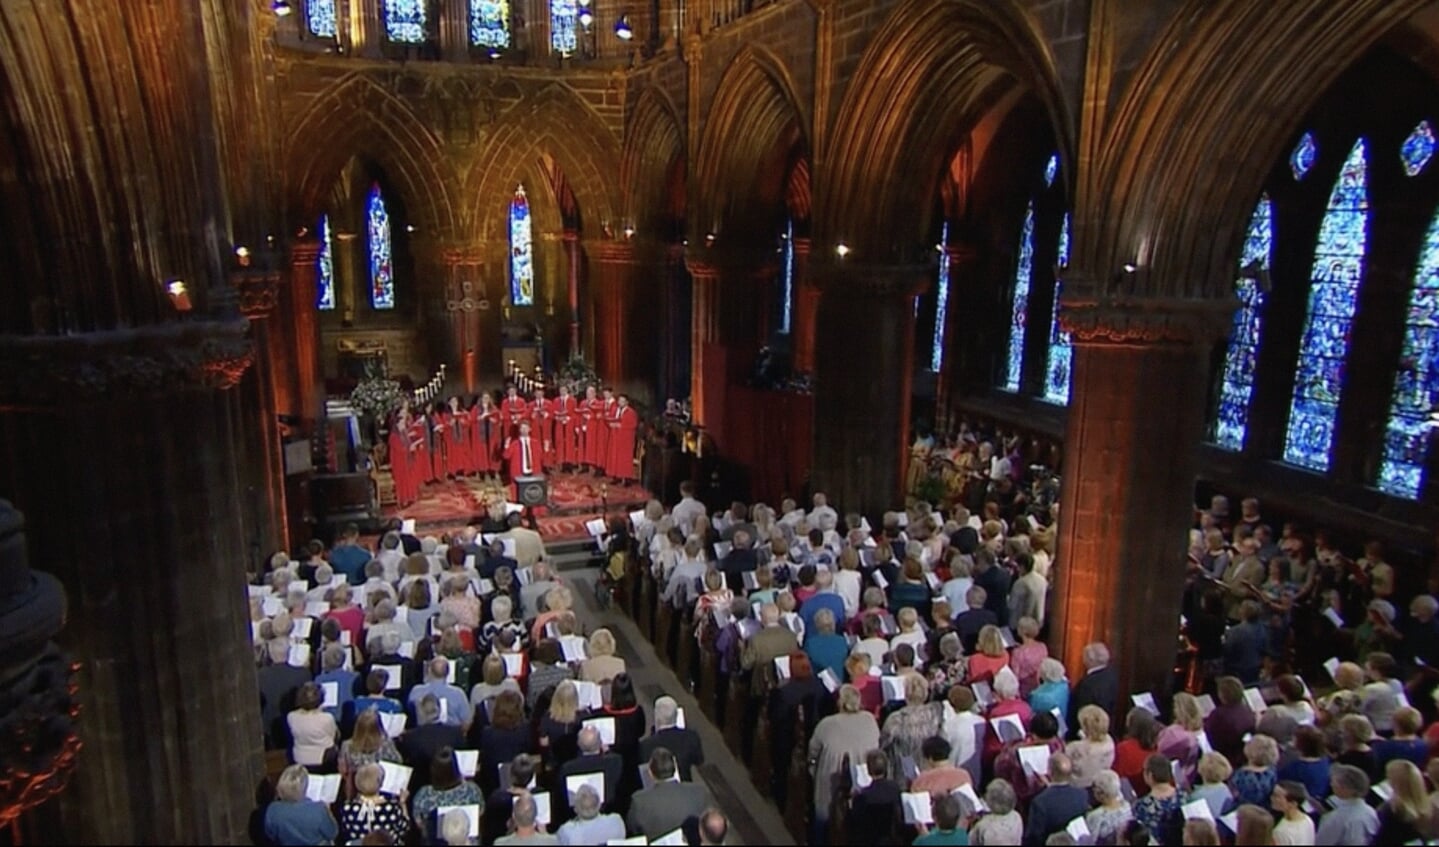 Beeld uit een uitzending van het populaire BBC-programma Songs of Praise vanuit de kathedraal in de Engelse plaats Durham.